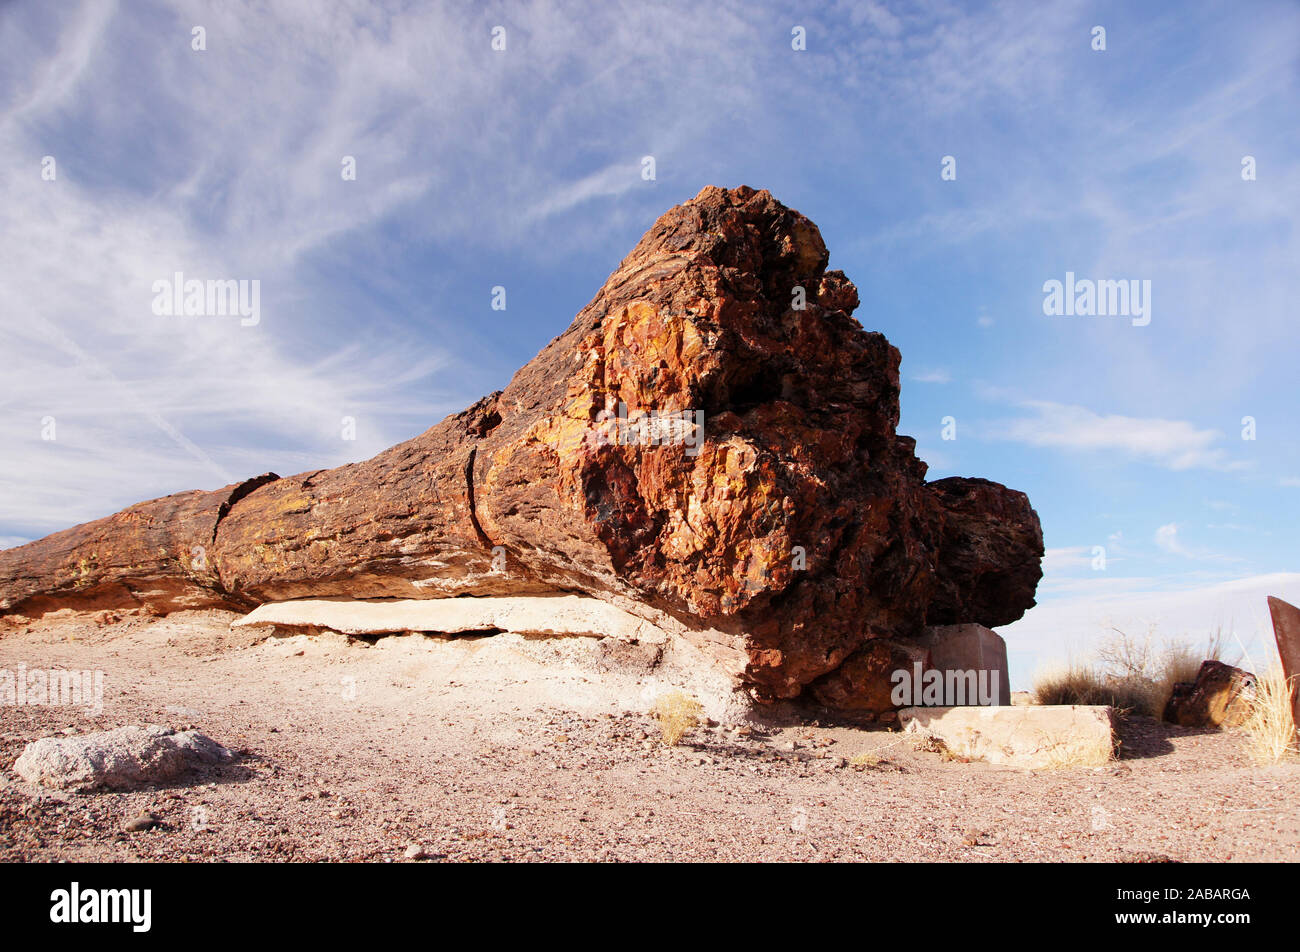 Der Petrified-Forest-Nationalpark ist ein Nationalpark der Vereinigten Staaten im Nordosten Arizonas. Foto Stock